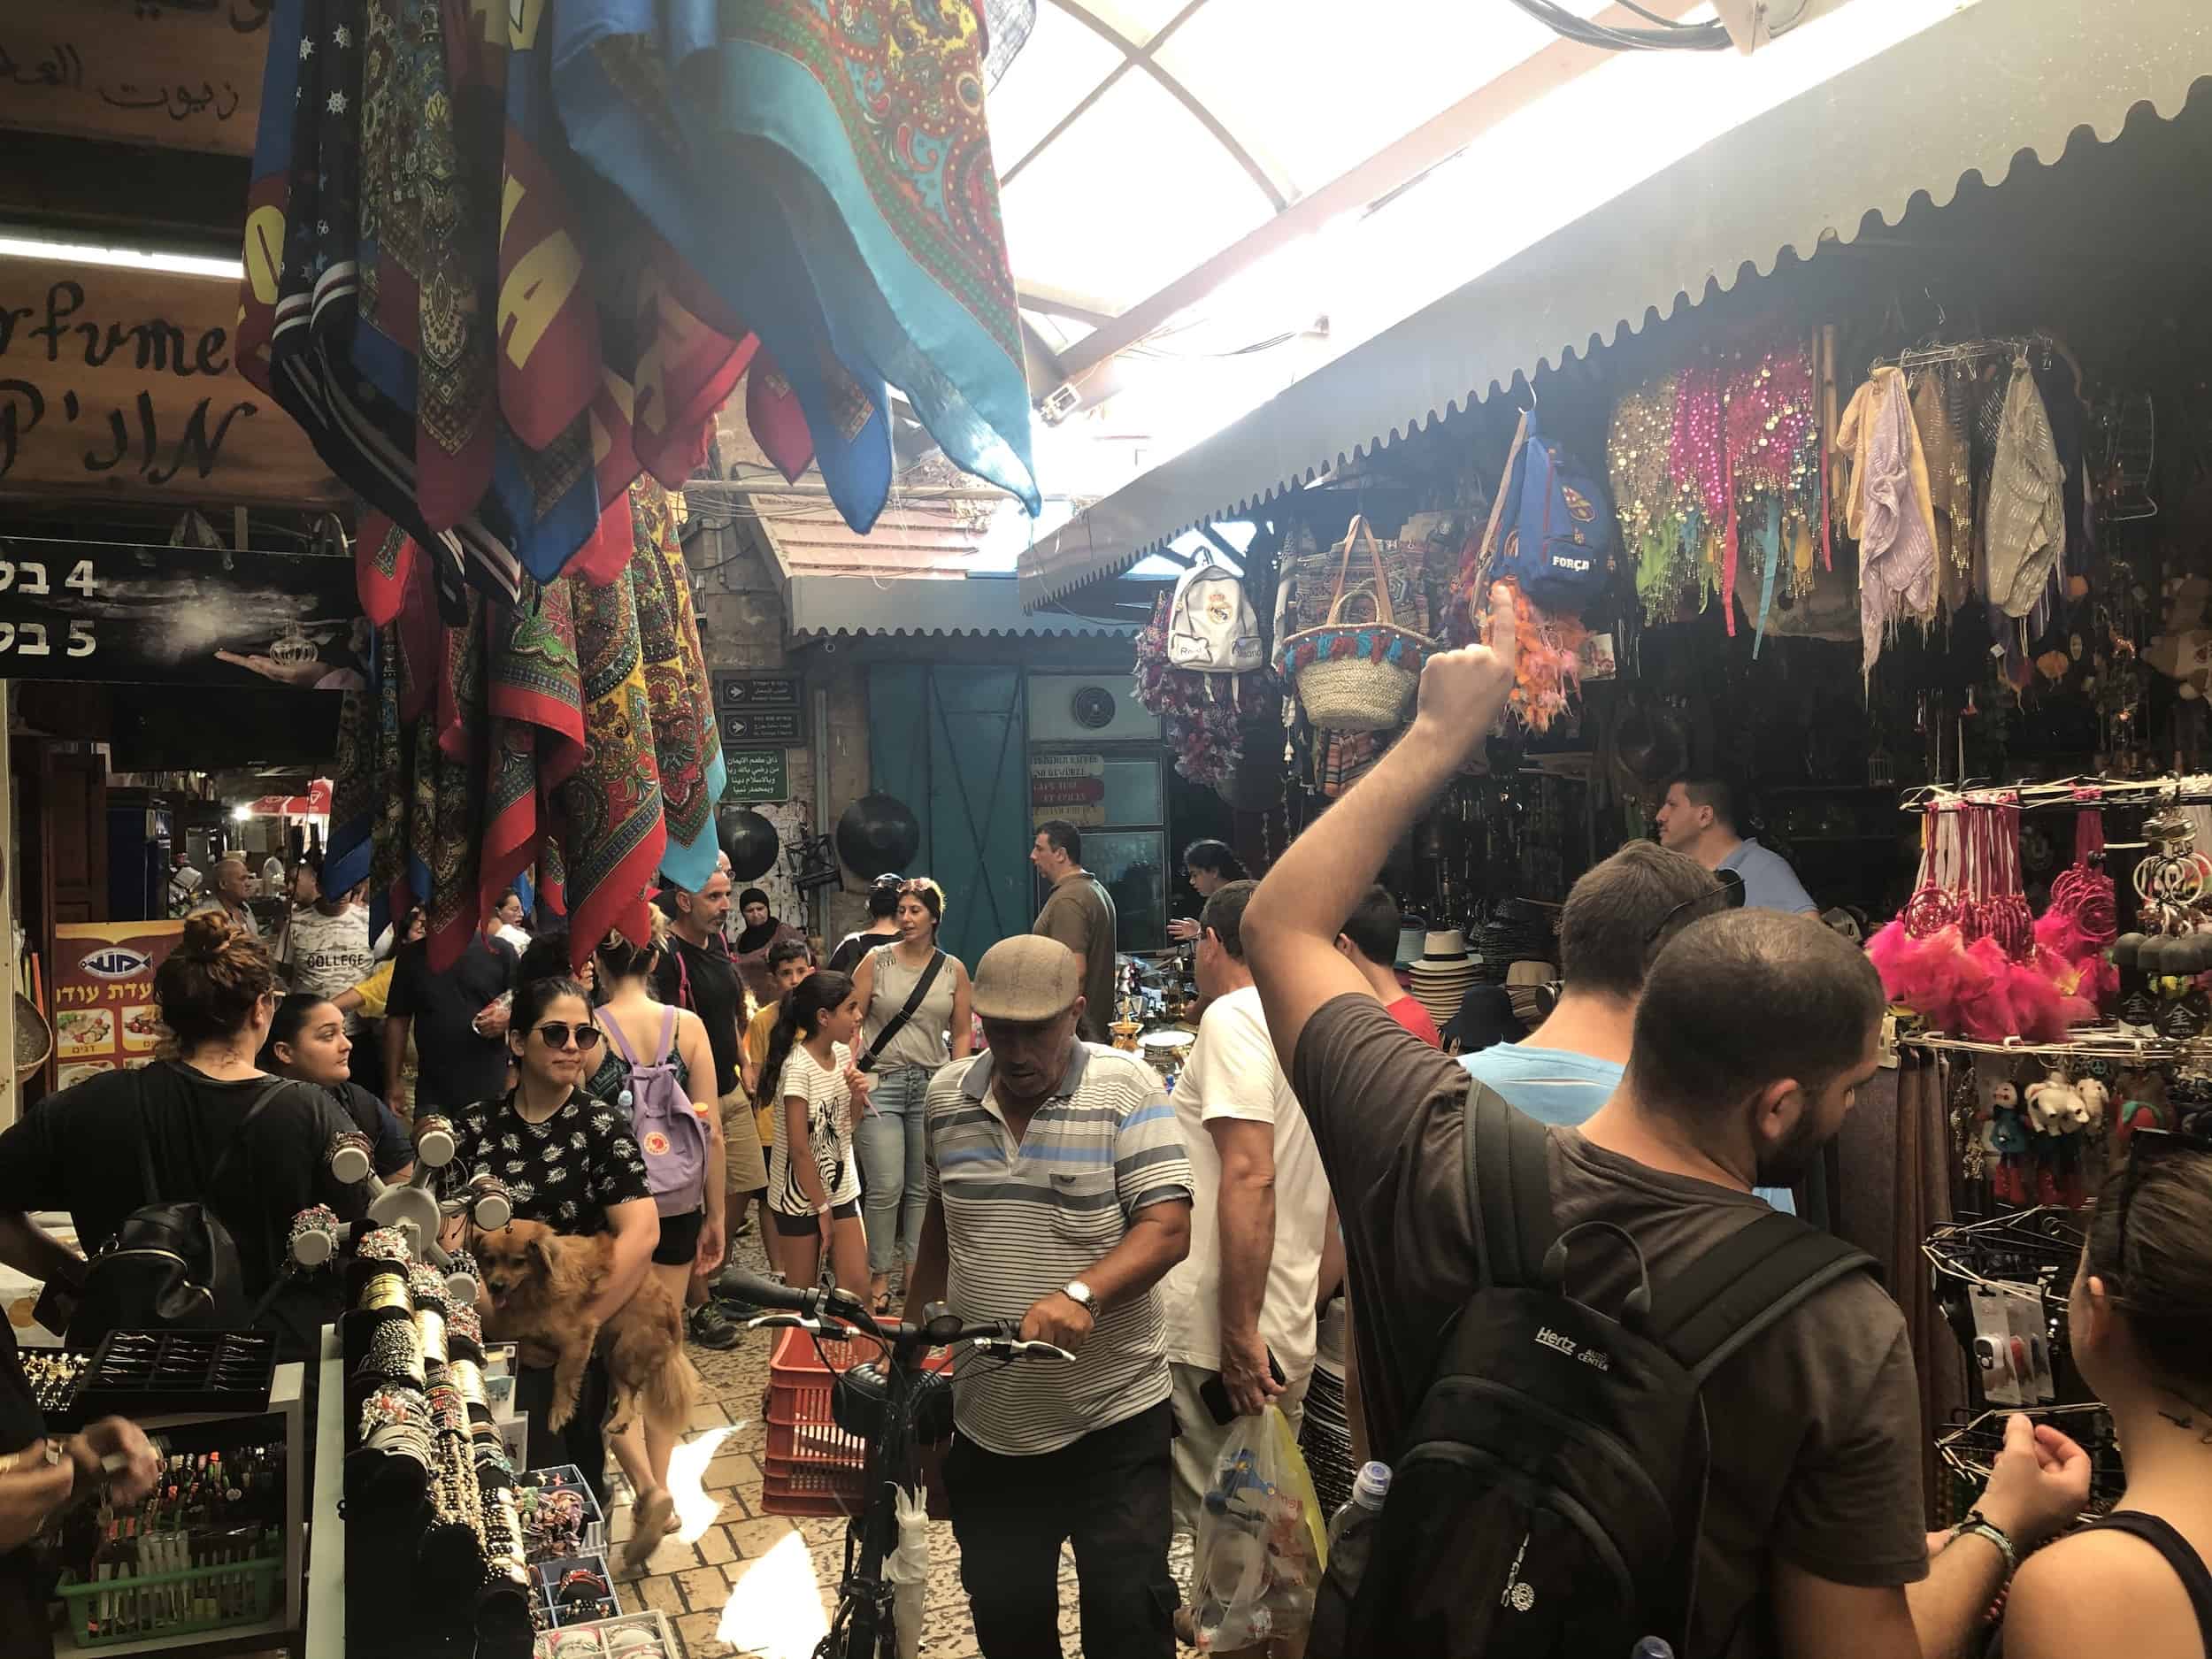 Market in Acre, Israel